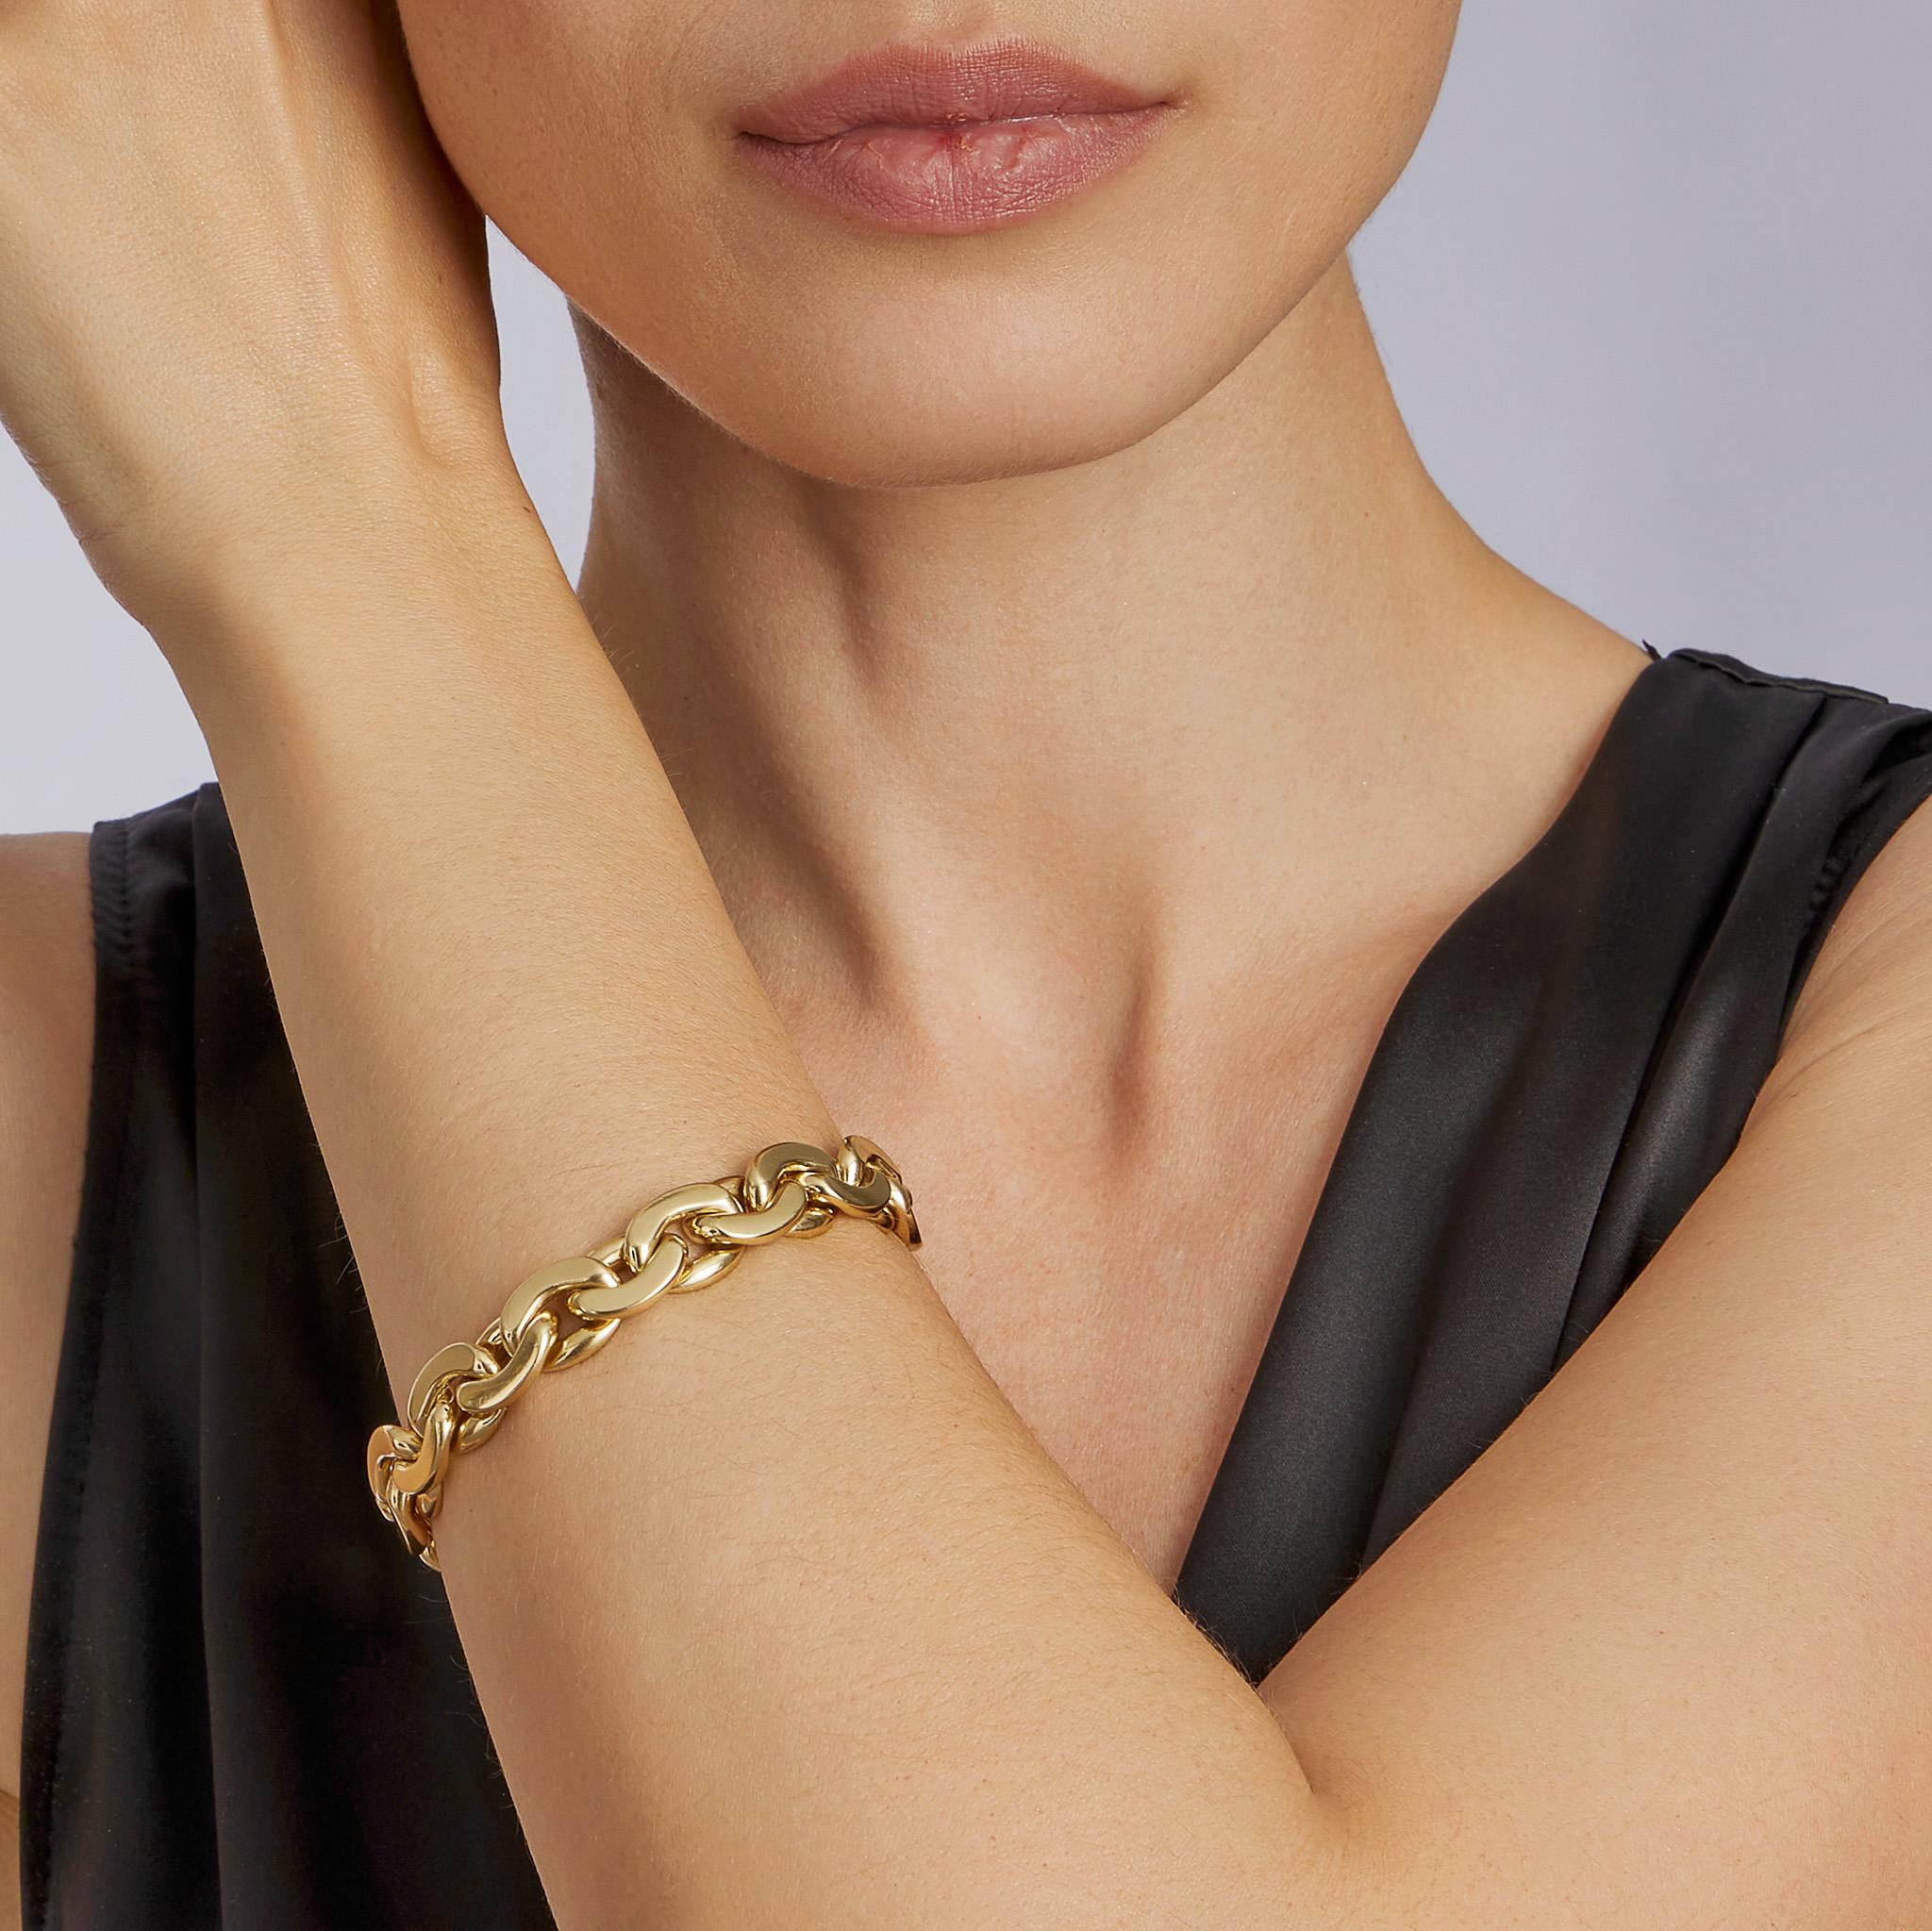 Dieses stromlinienförmige, abgeflachte Armband von Tiffany & Co. stammt aus den 1970er Jahren. Italien besteht aus poliertem 18K Gold. Eine schöne Form A, sowohl in der Modellierung als auch in den Proportionen. Dieses maximal weiche und flexible